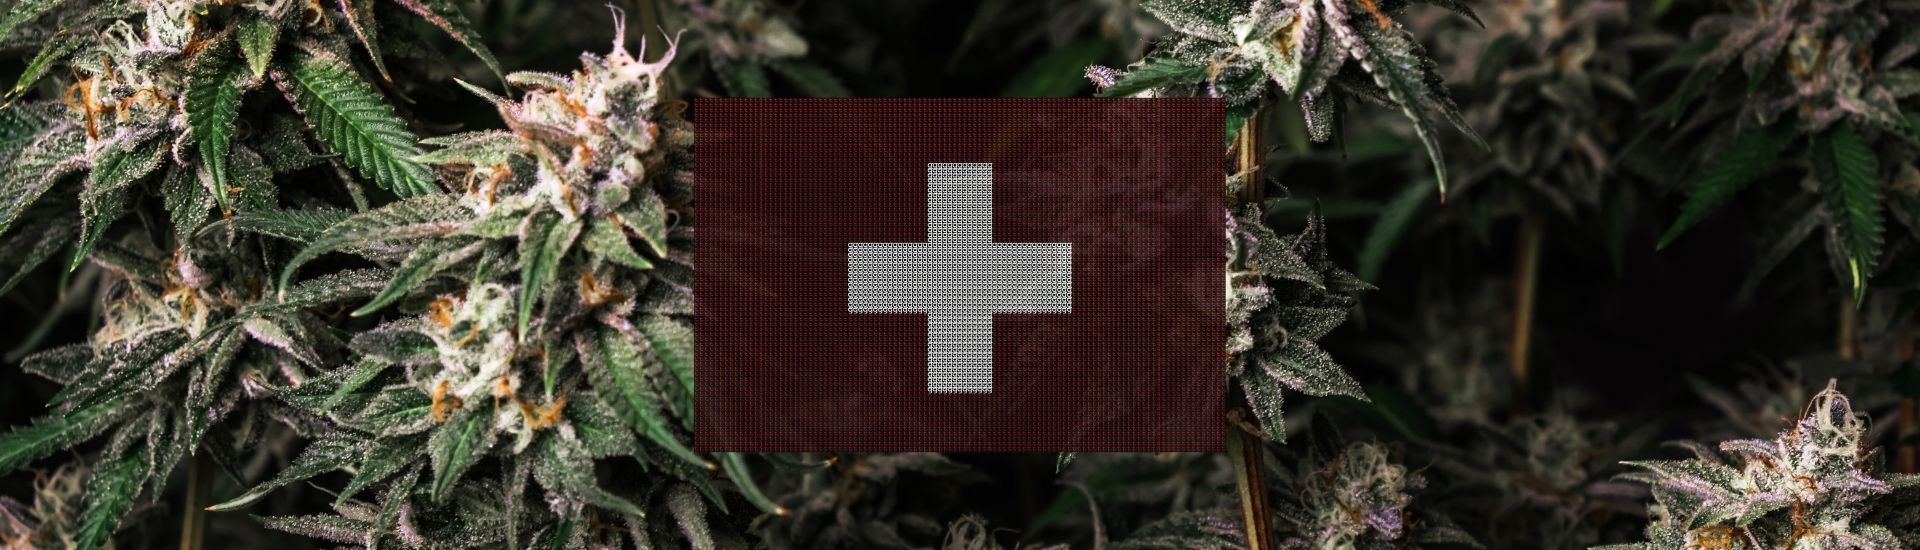 Législation du CBD en Suisse Tegridy CBD